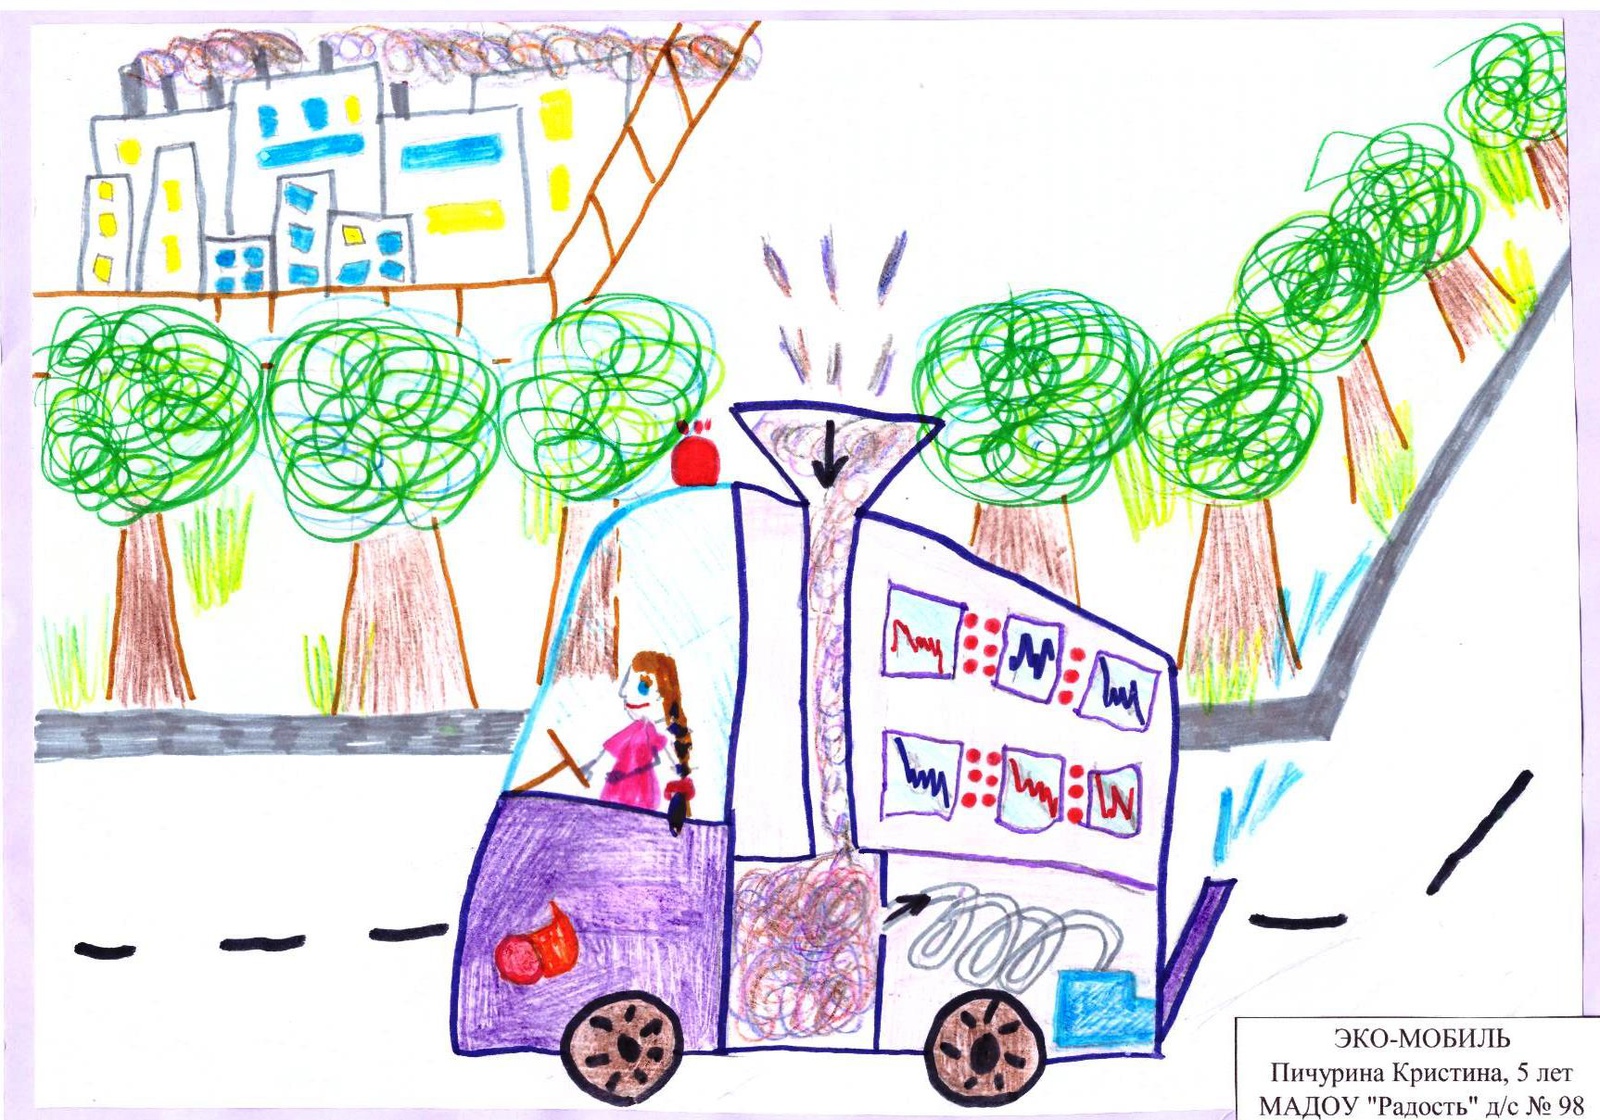 Конкурс детского рисунка транспорт будущего